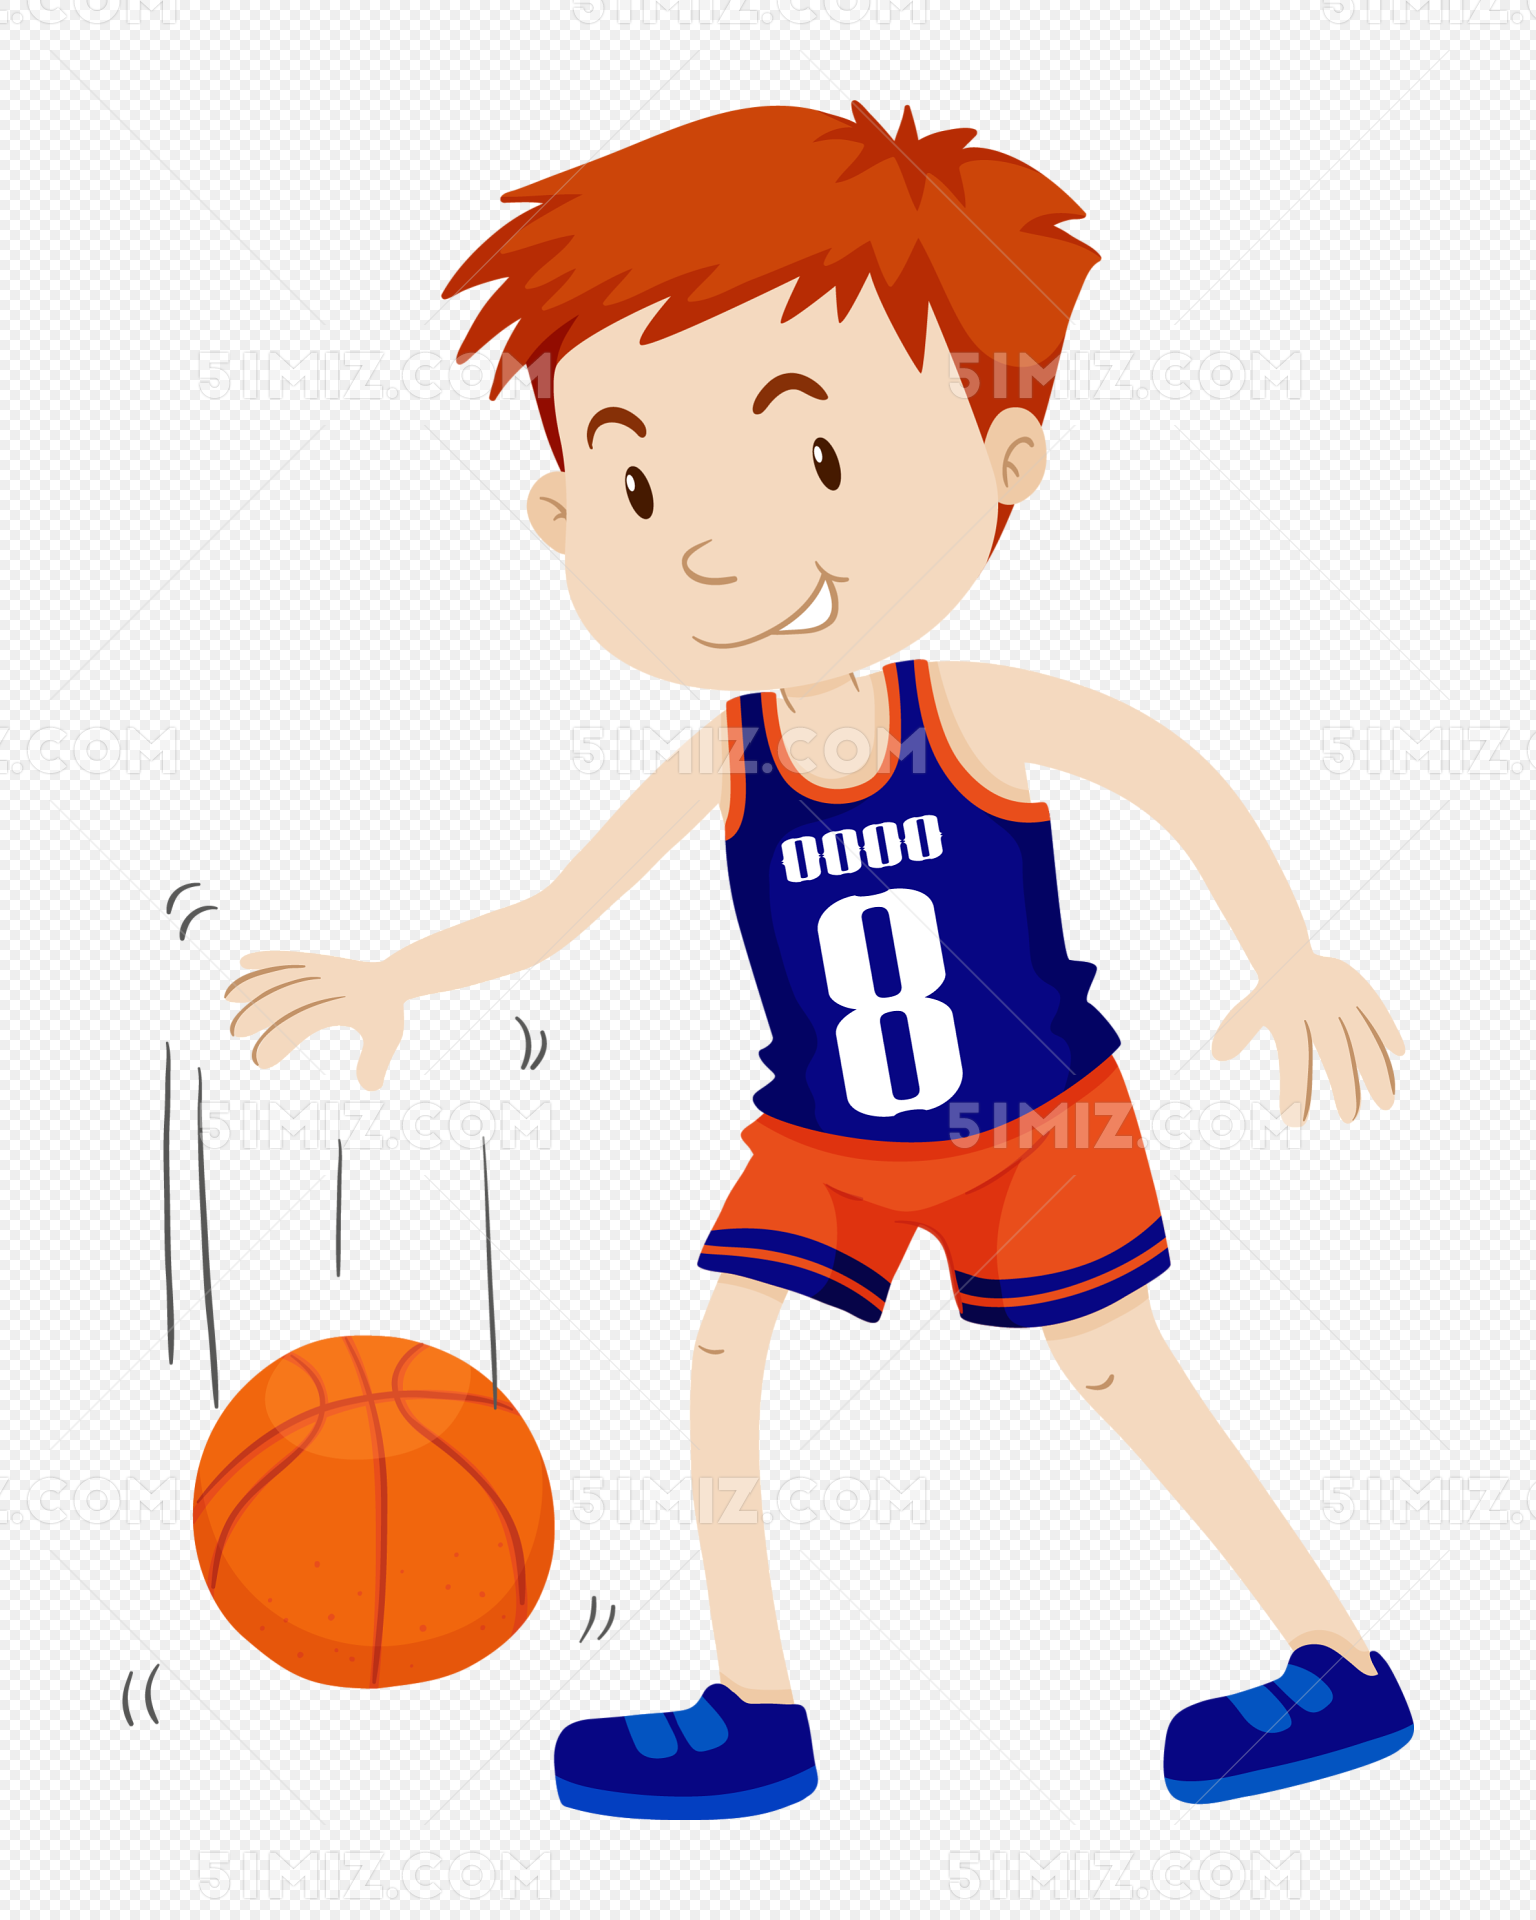 Boy Playing Basketball PNG Image & PSD File Free Download - Lovepik | 401398374